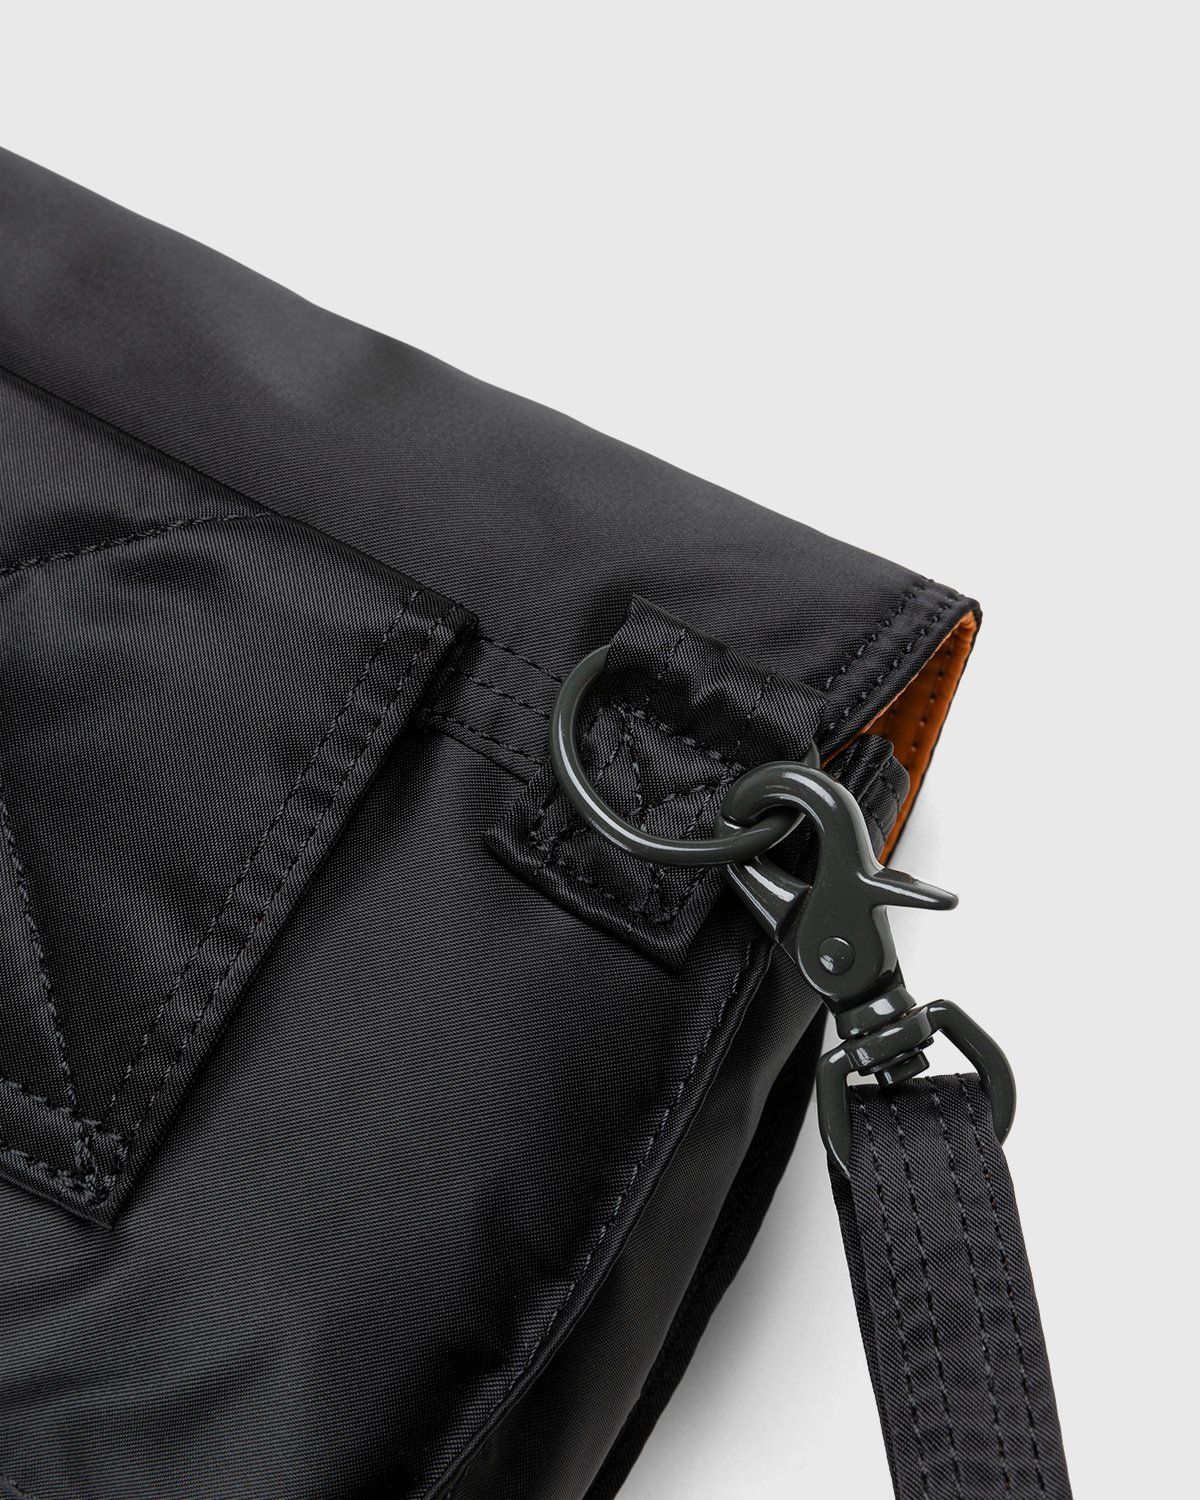 Porter-Yoshida & Co. – Tanker Clip Shoulder Bag Black